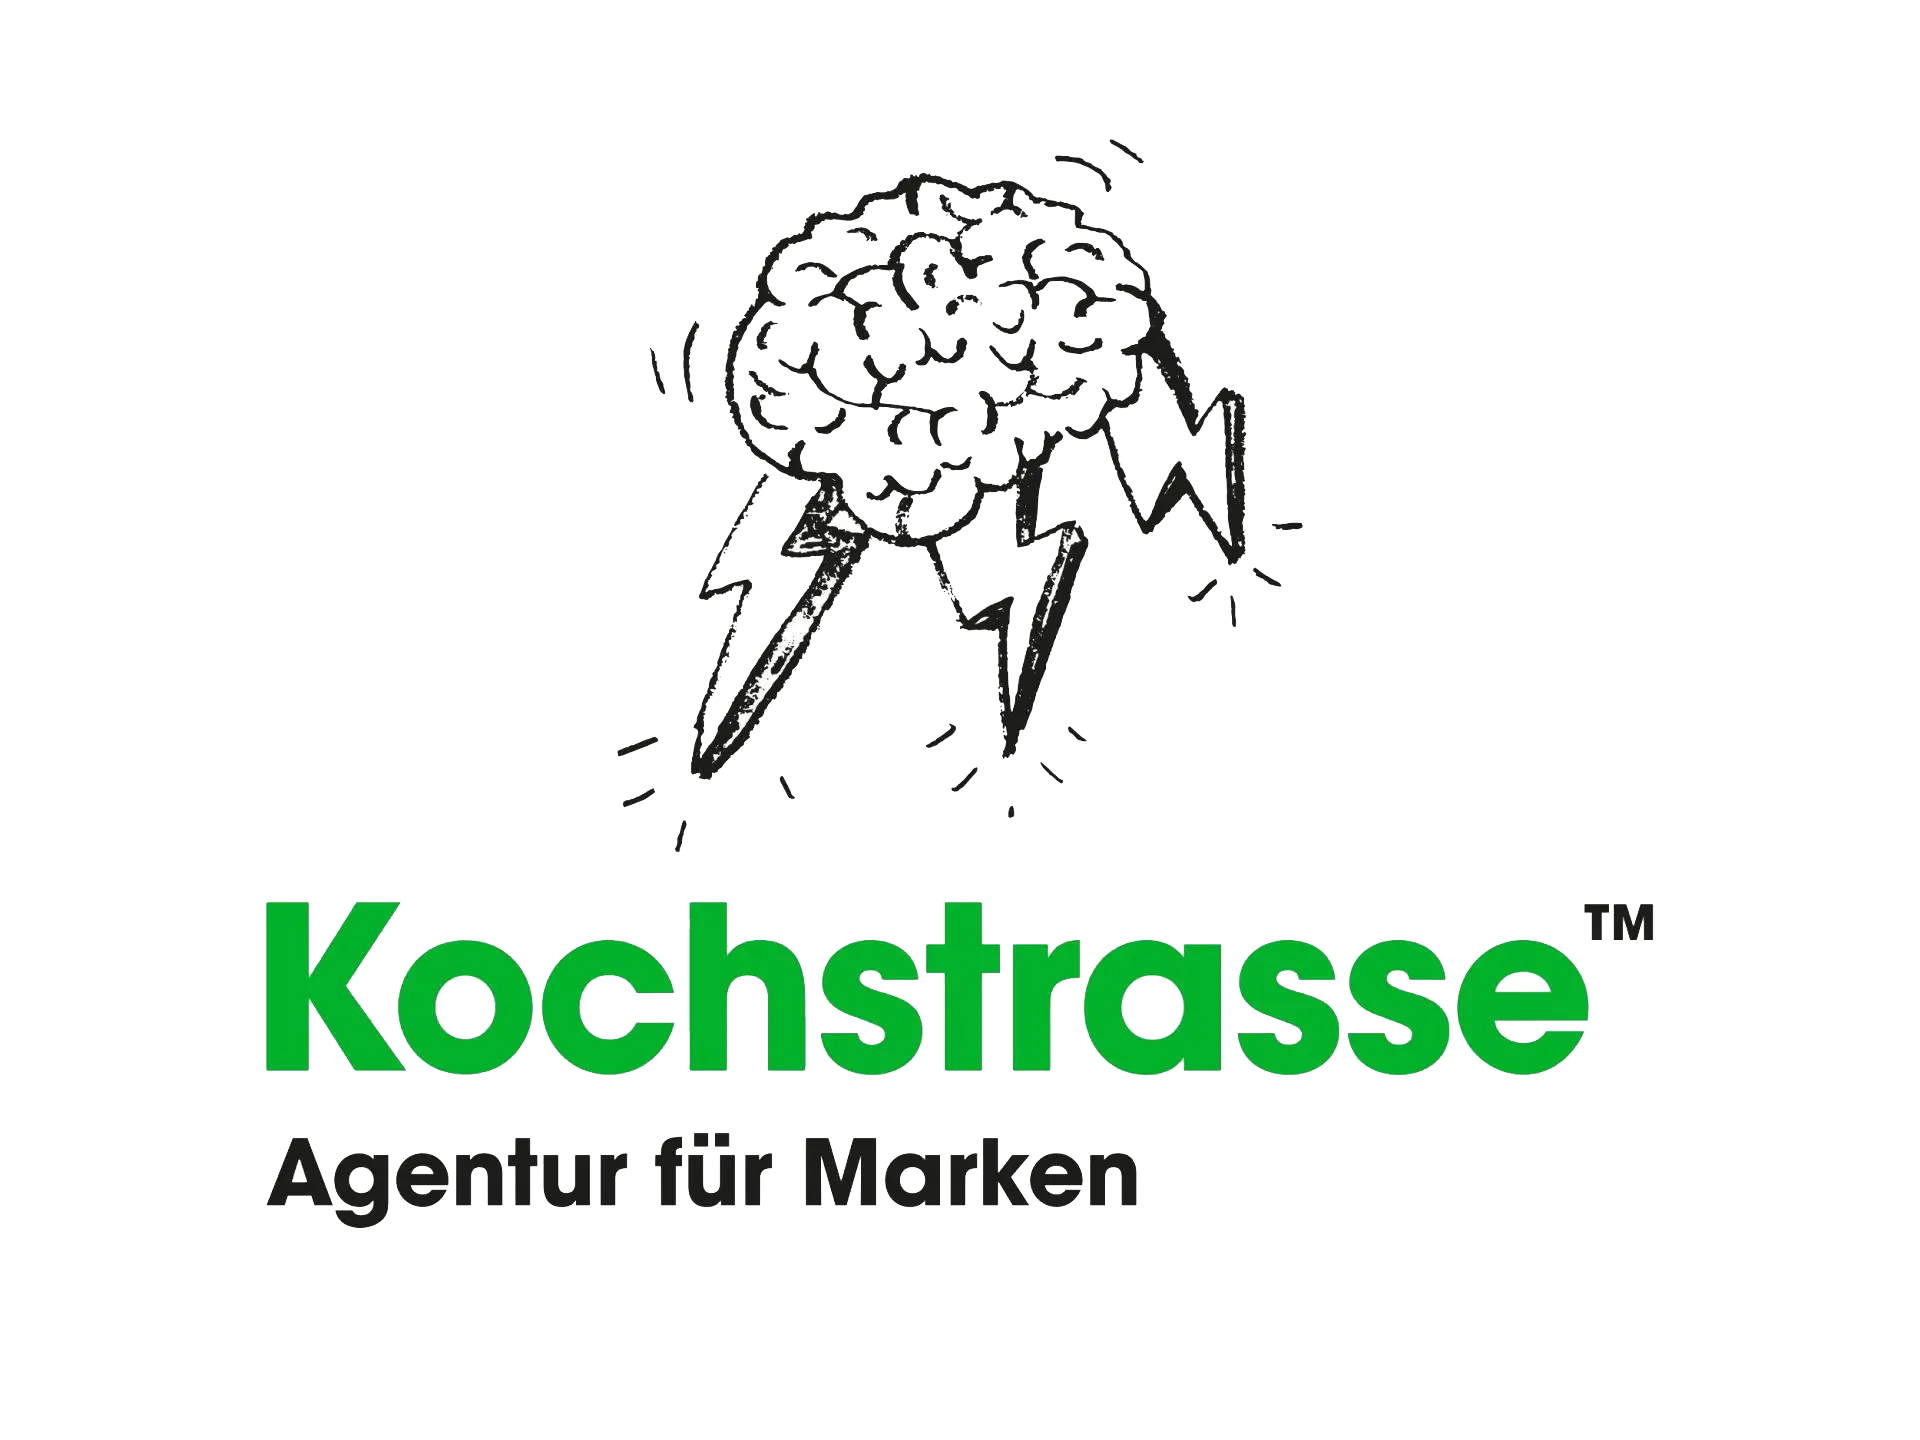 Kochstrasse - Agentur für Marken GmbH